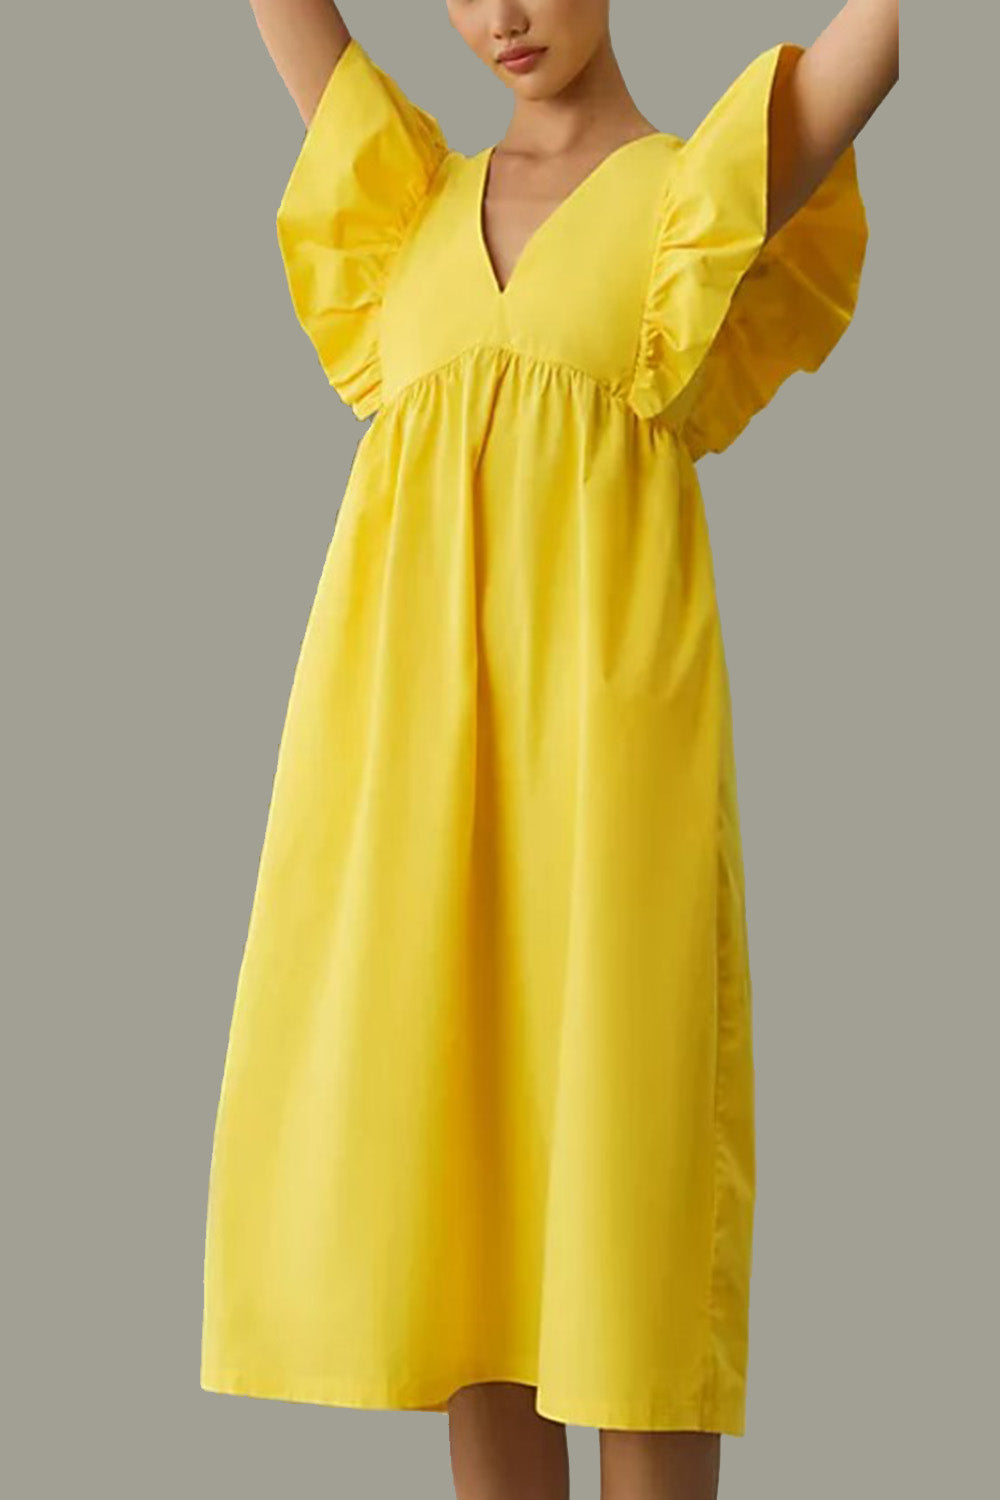 Serendipity Yellow Dress